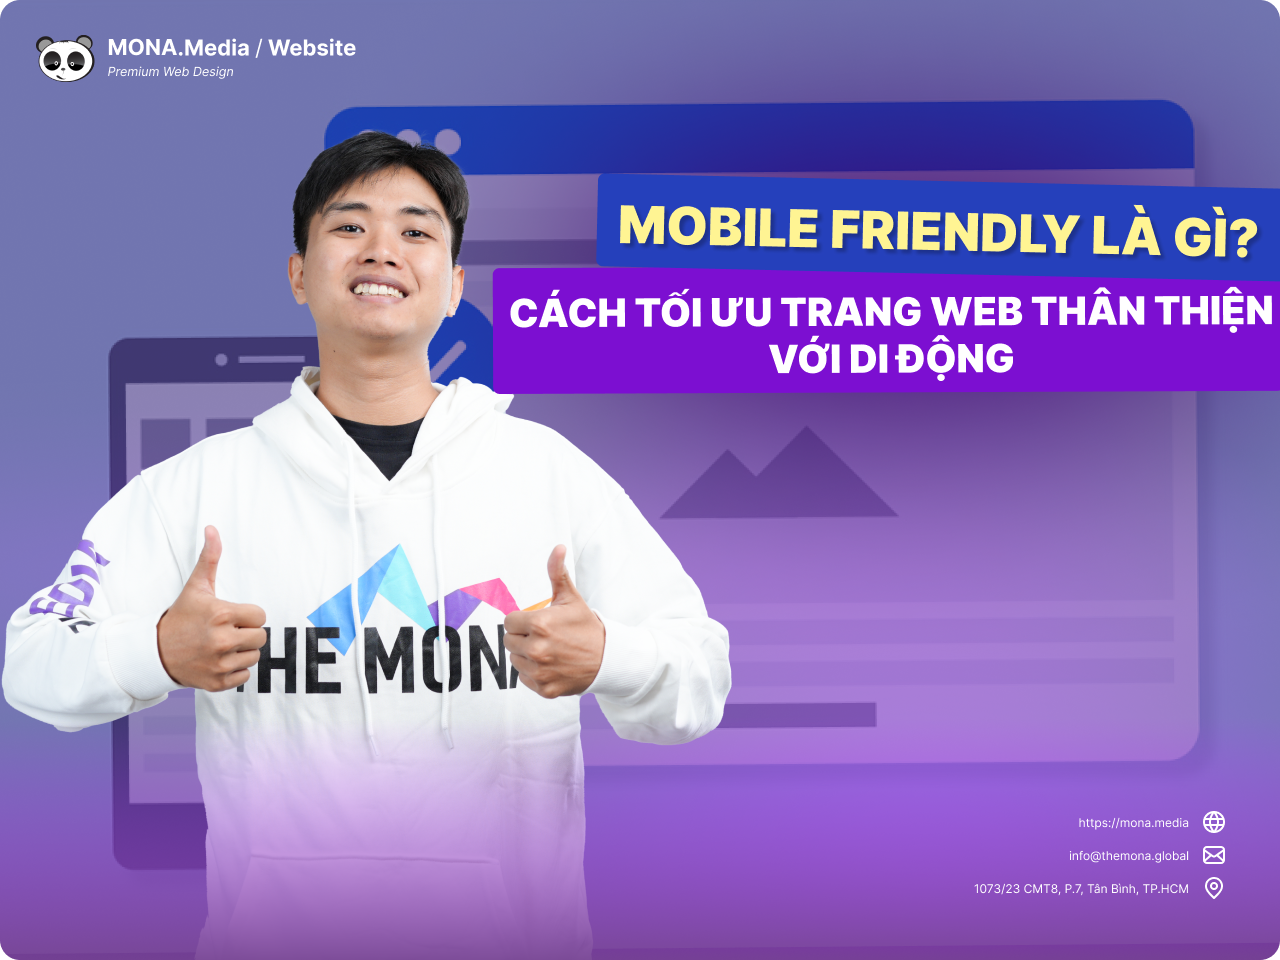 Mobile Friendly là gì? Cách tối ưu trang web thân thiện trên di động